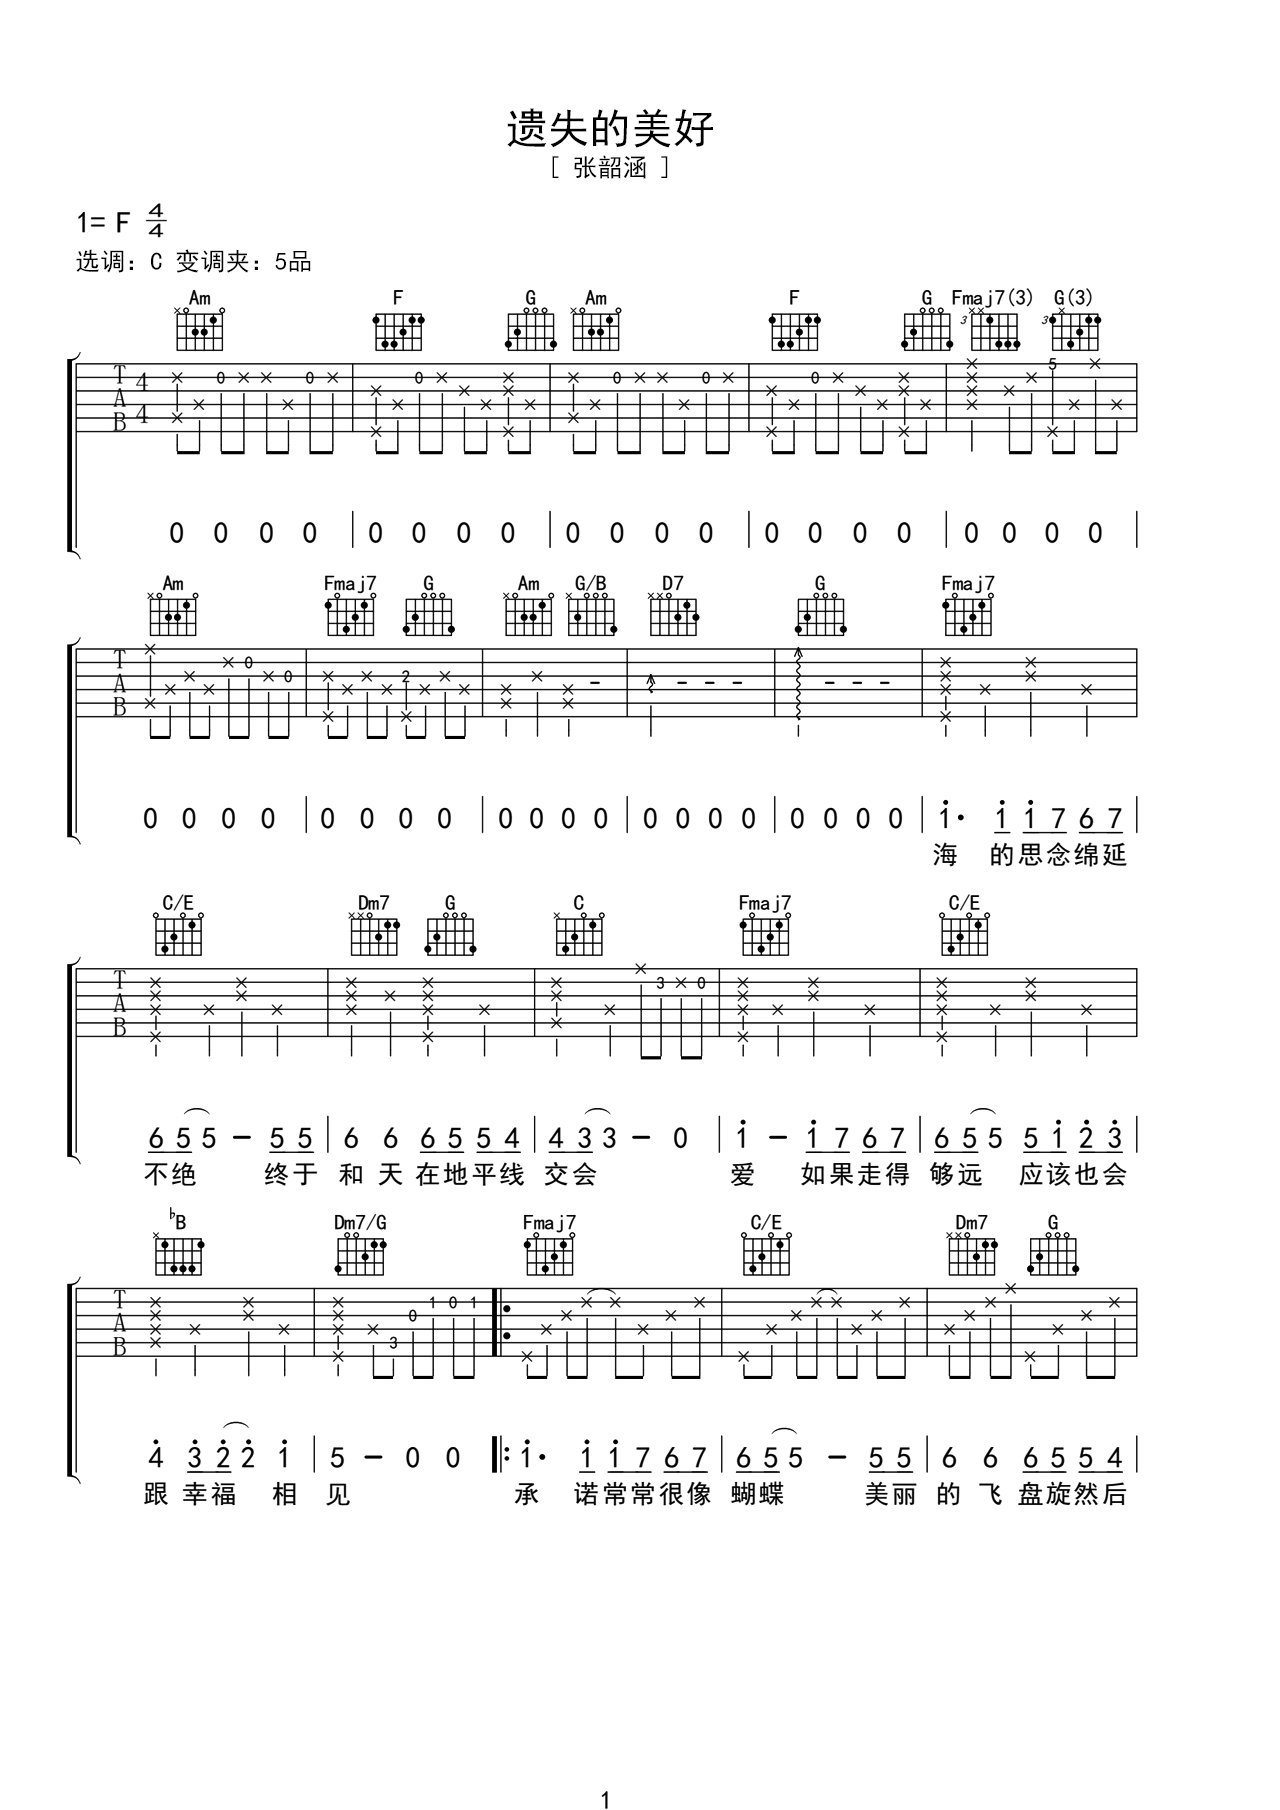 张韶涵成名曲吉他谱《遗失的美好》女歌手-吉他曲谱 - 乐器学习网